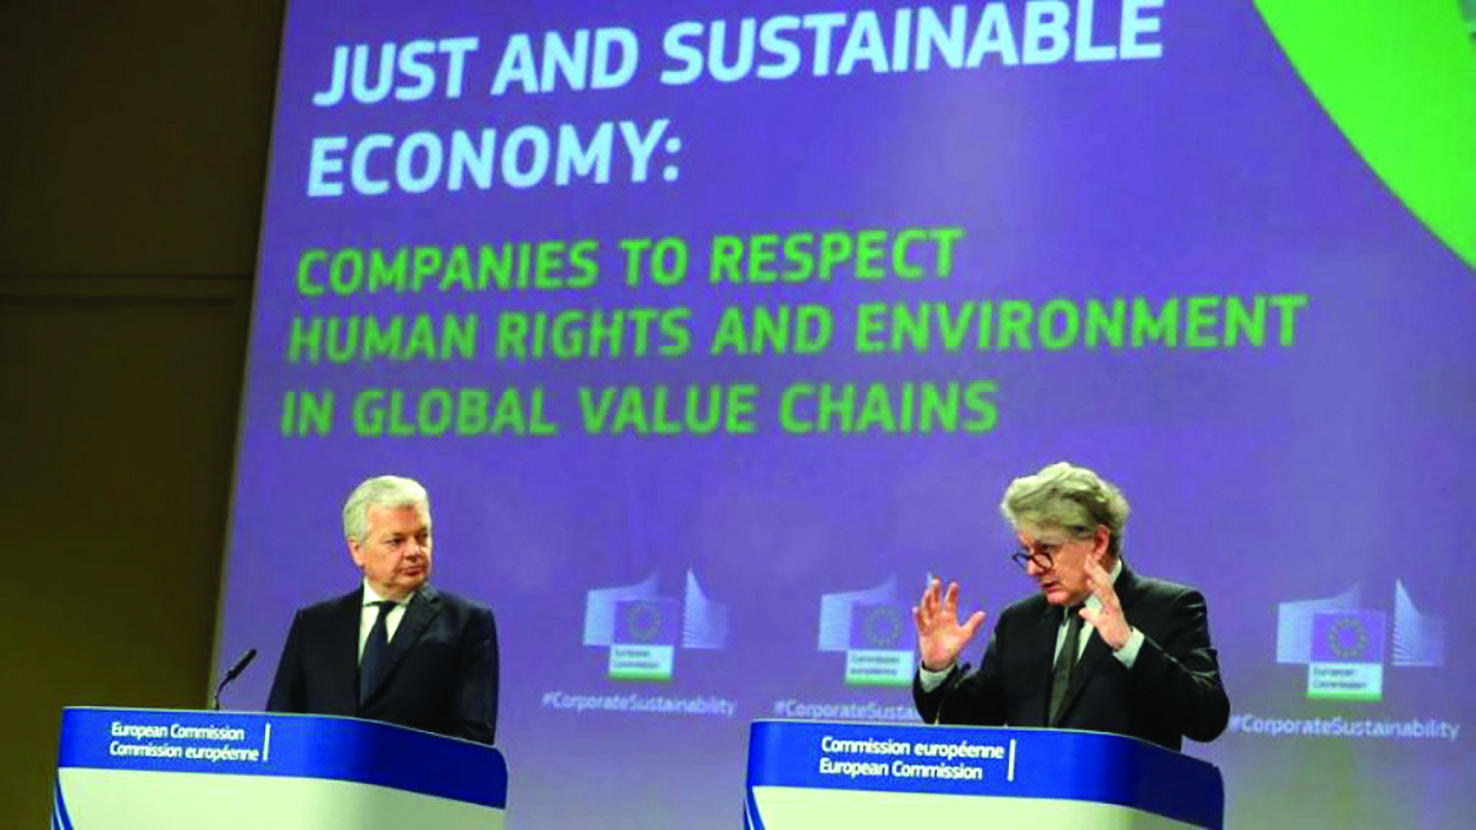  Cao ủy châu Âu về tư pháp, Didier Reynders (trái) và Cao ủy châu Âu về thị trường nội khối, Thierry Breton tại cuộc họp báo công bố Chỉ thị thẩm định tính bền vững doanh nghiệp. Ảnh: EPA